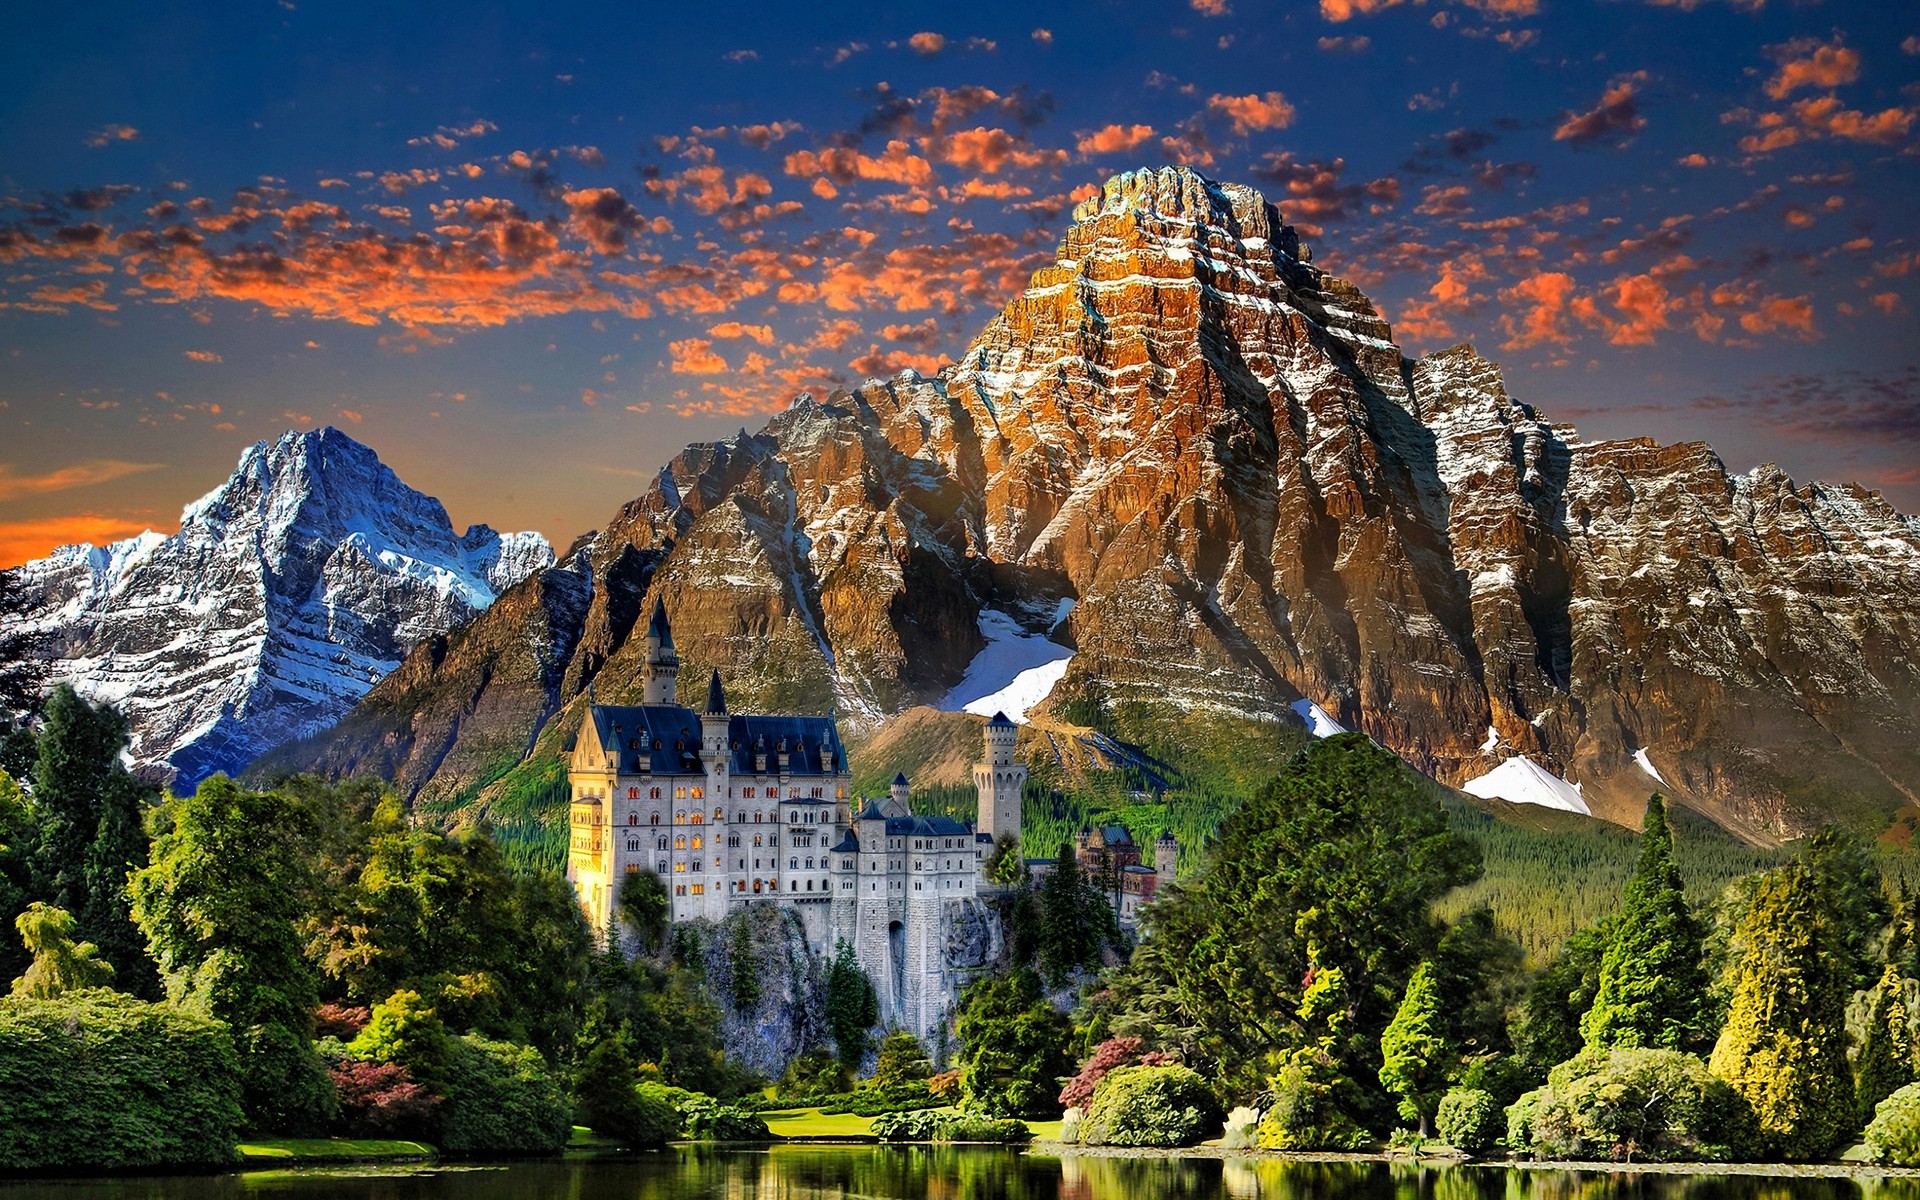 германия путешествия природа пейзаж горы небо зрелище лето рок туризм живописный на открытом воздухе долина пейзажи красивые холм замок нойшванштайн замок горы